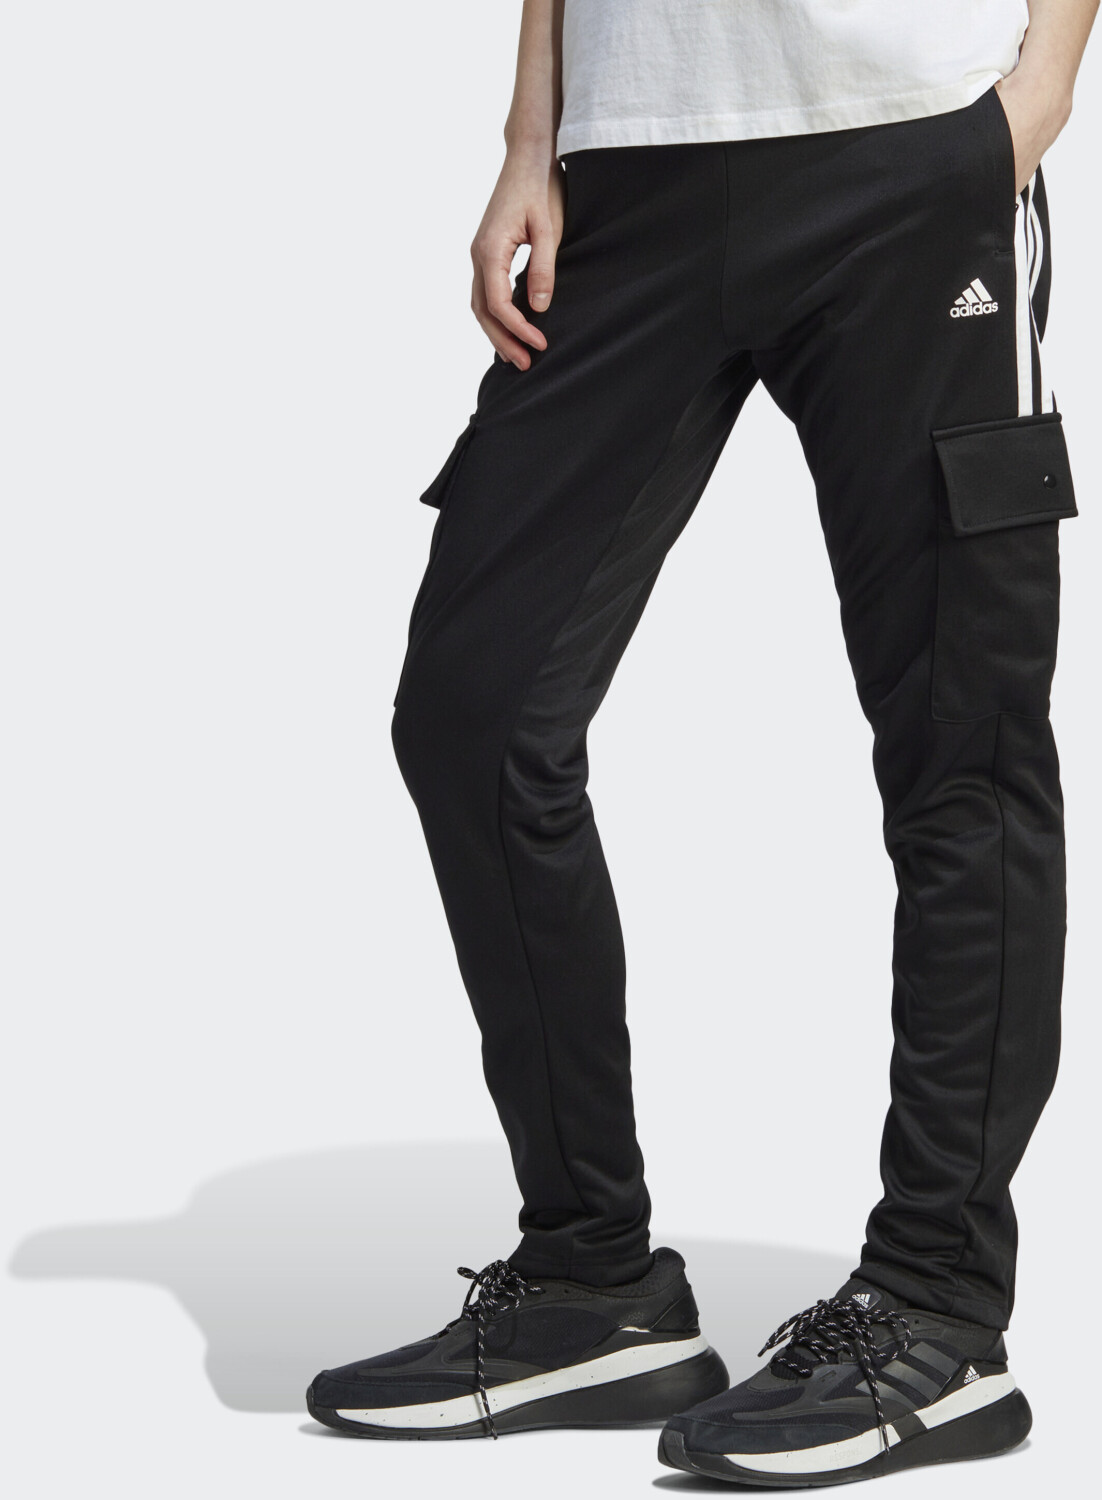 Adidas Woman Tiro CargoPants black/white (IA3034) ab 37,99 € |  Preisvergleich bei